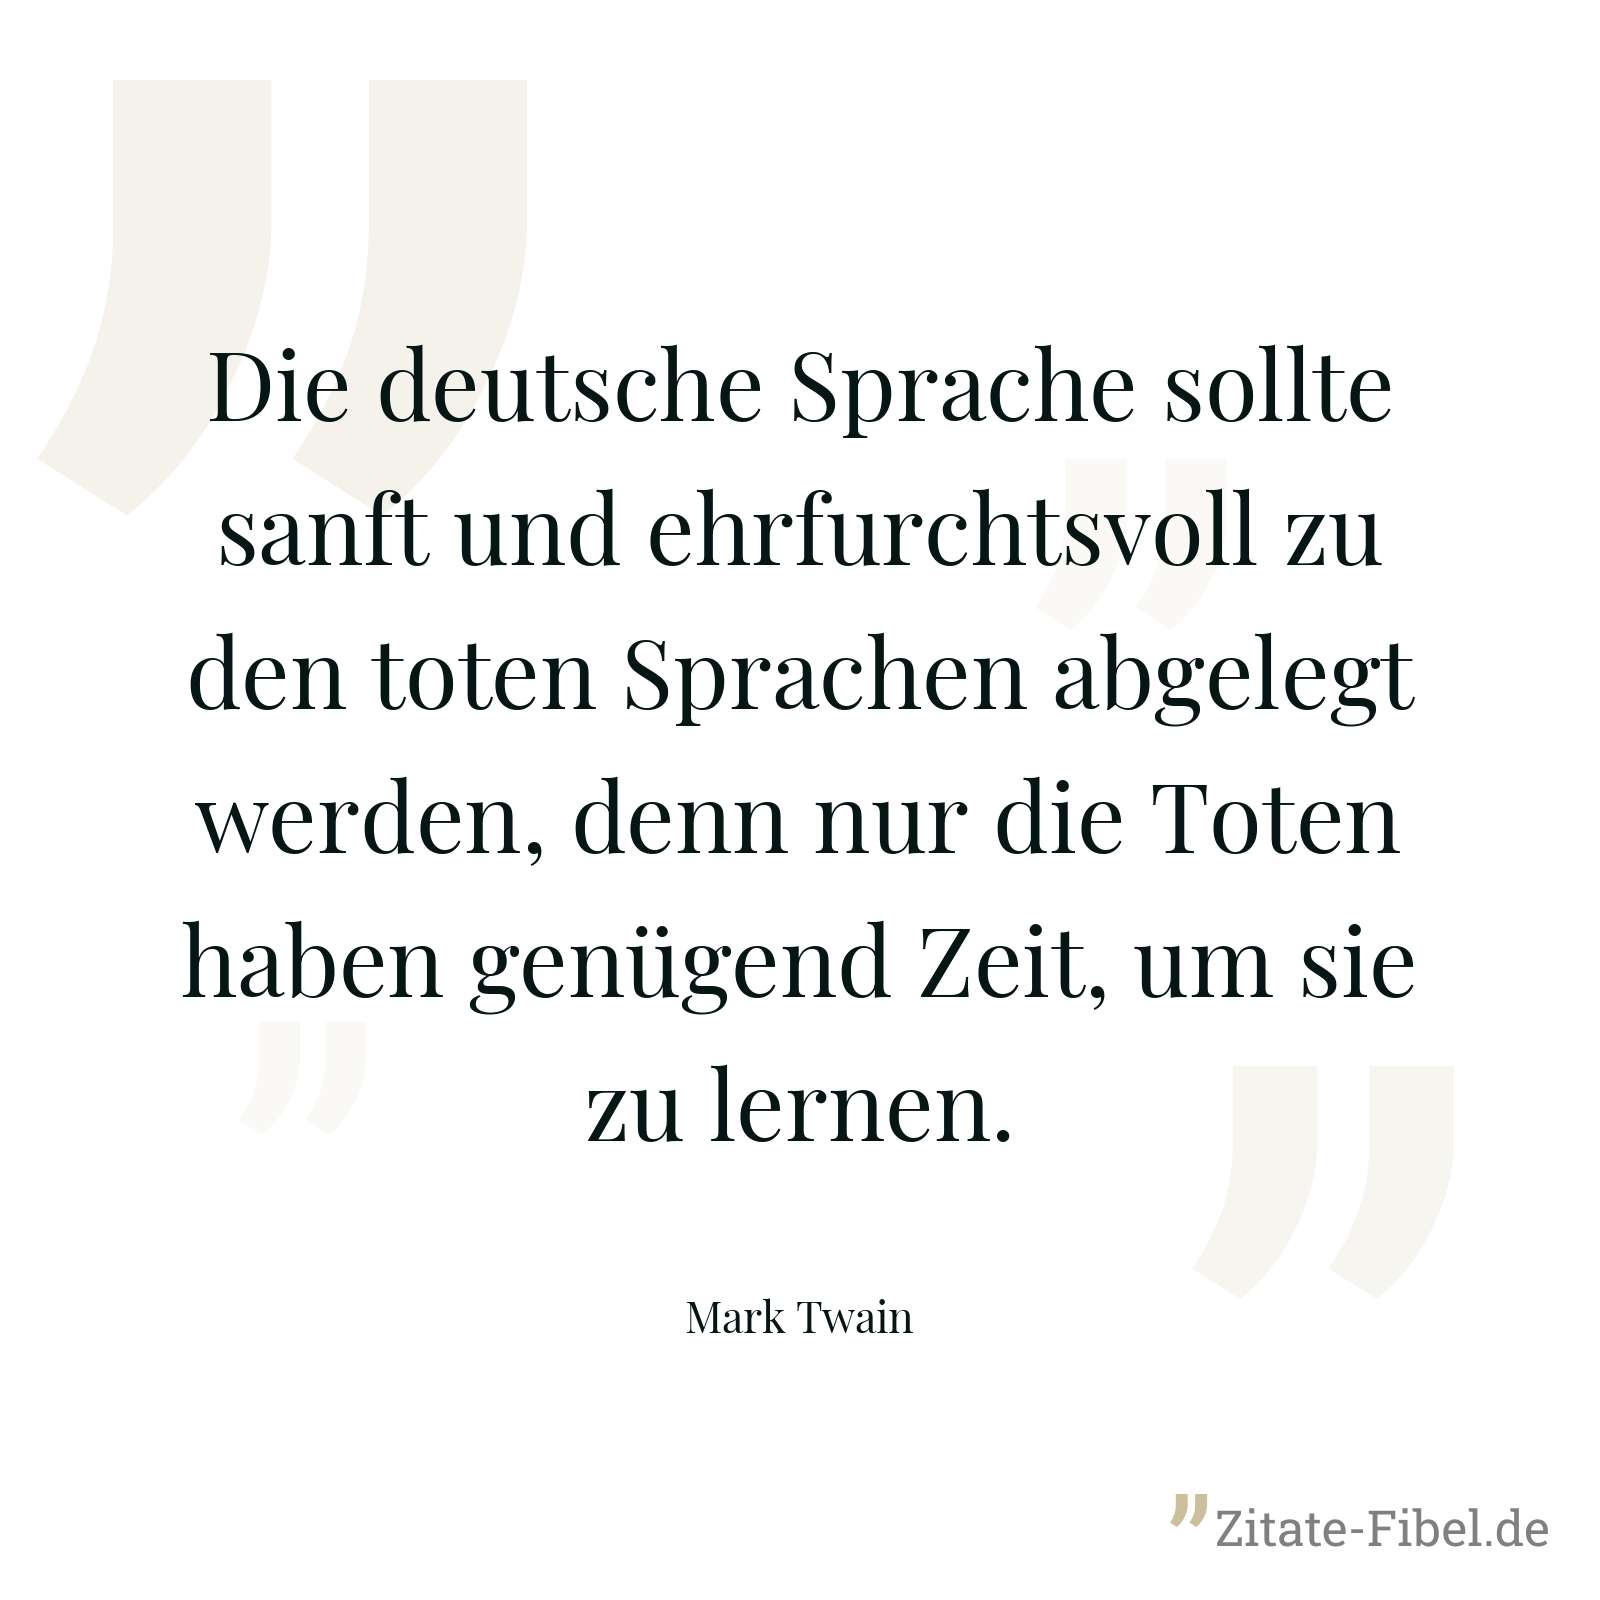 Die deutsche Sprache sollte sanft und ehrfurchtsvoll zu den toten Sprachen abgelegt werden, denn nur die Toten haben genügend Zeit, um sie zu lernen. - Mark Twain